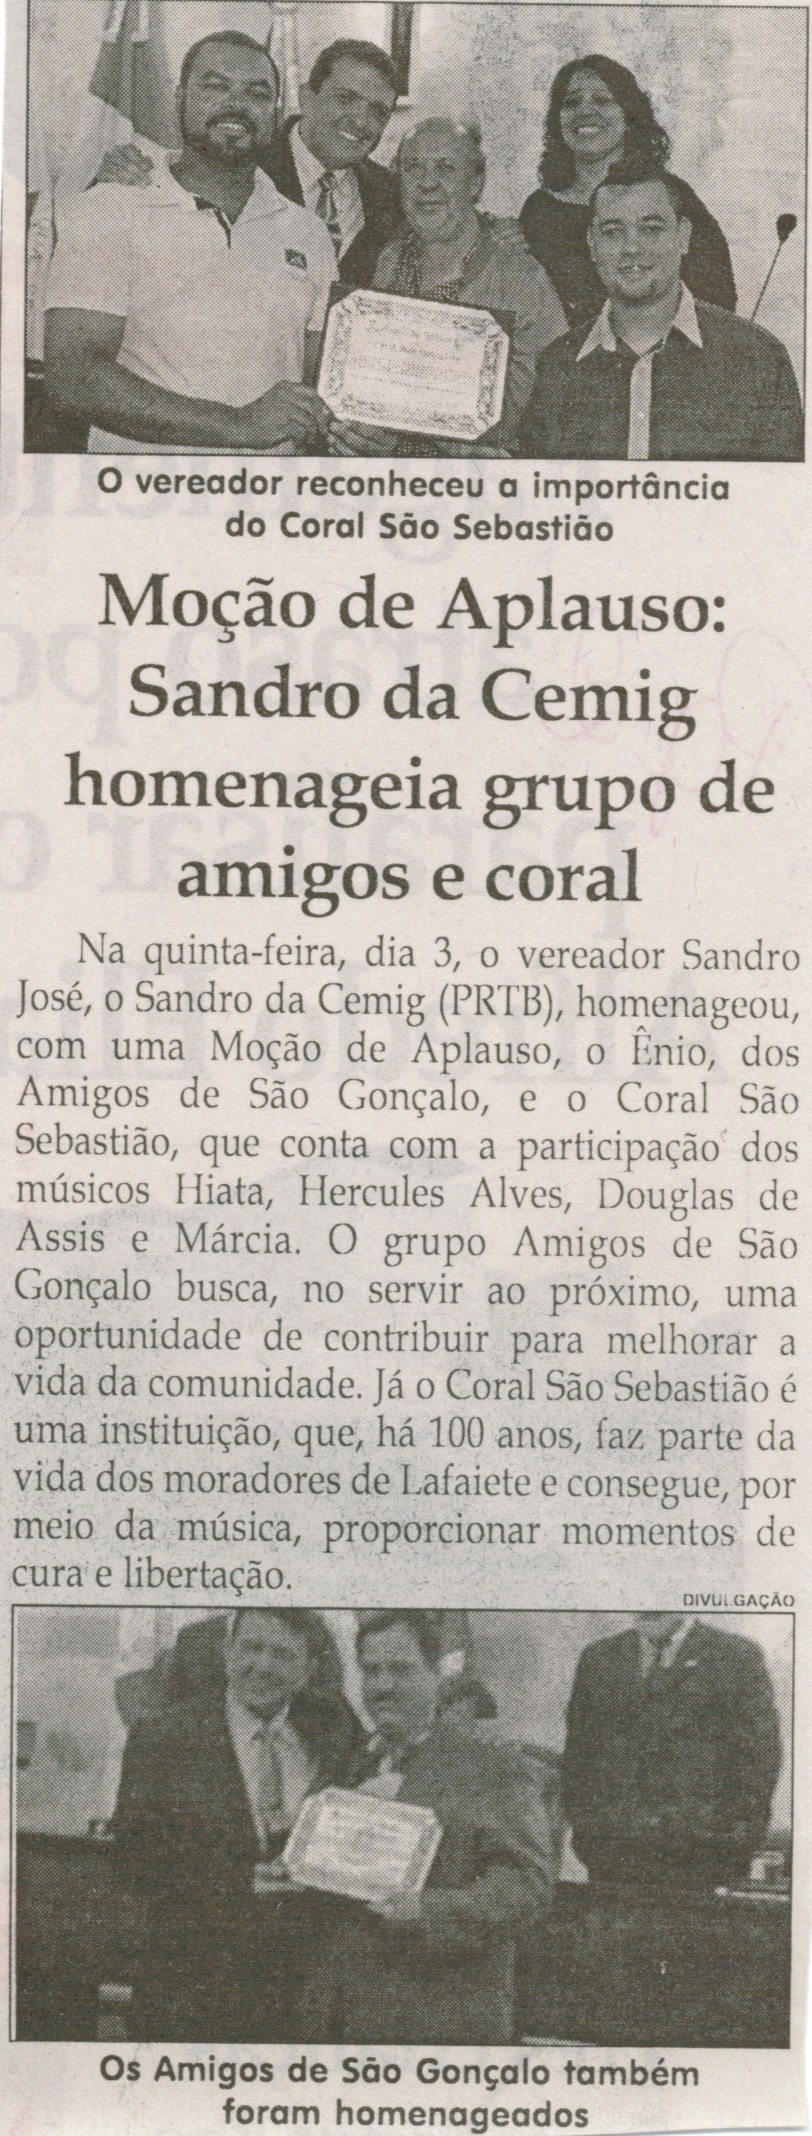  Moção de aplauso Sandro da Cemig homenageia grupo de amigos e coral. Jornal Correio da Cidade, Conselheiro Lafaiete, 19 jul. 2014, p. 2.